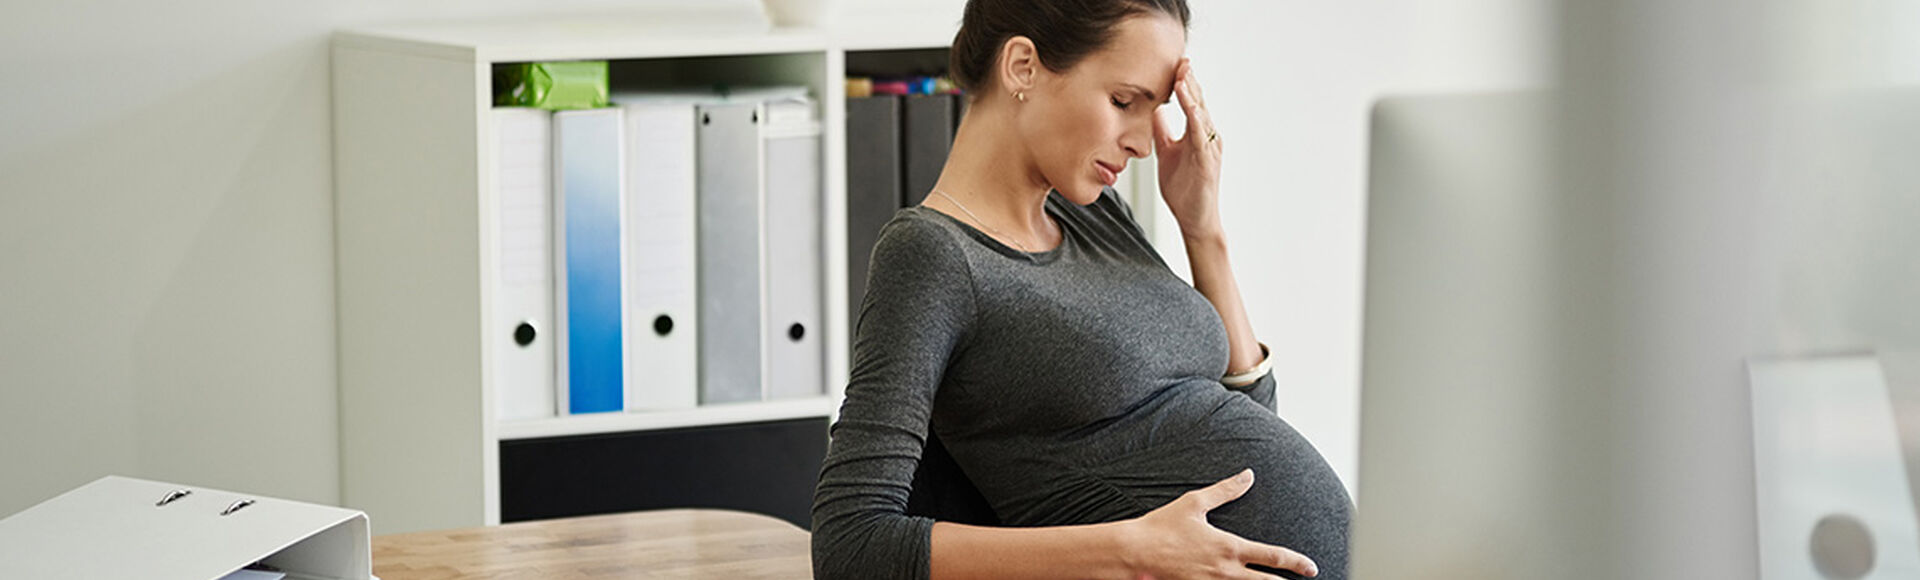 Estoy embarazada y me siento muy cansada ¿Qué puedo hacer?  | Más Abrazos by Huggies